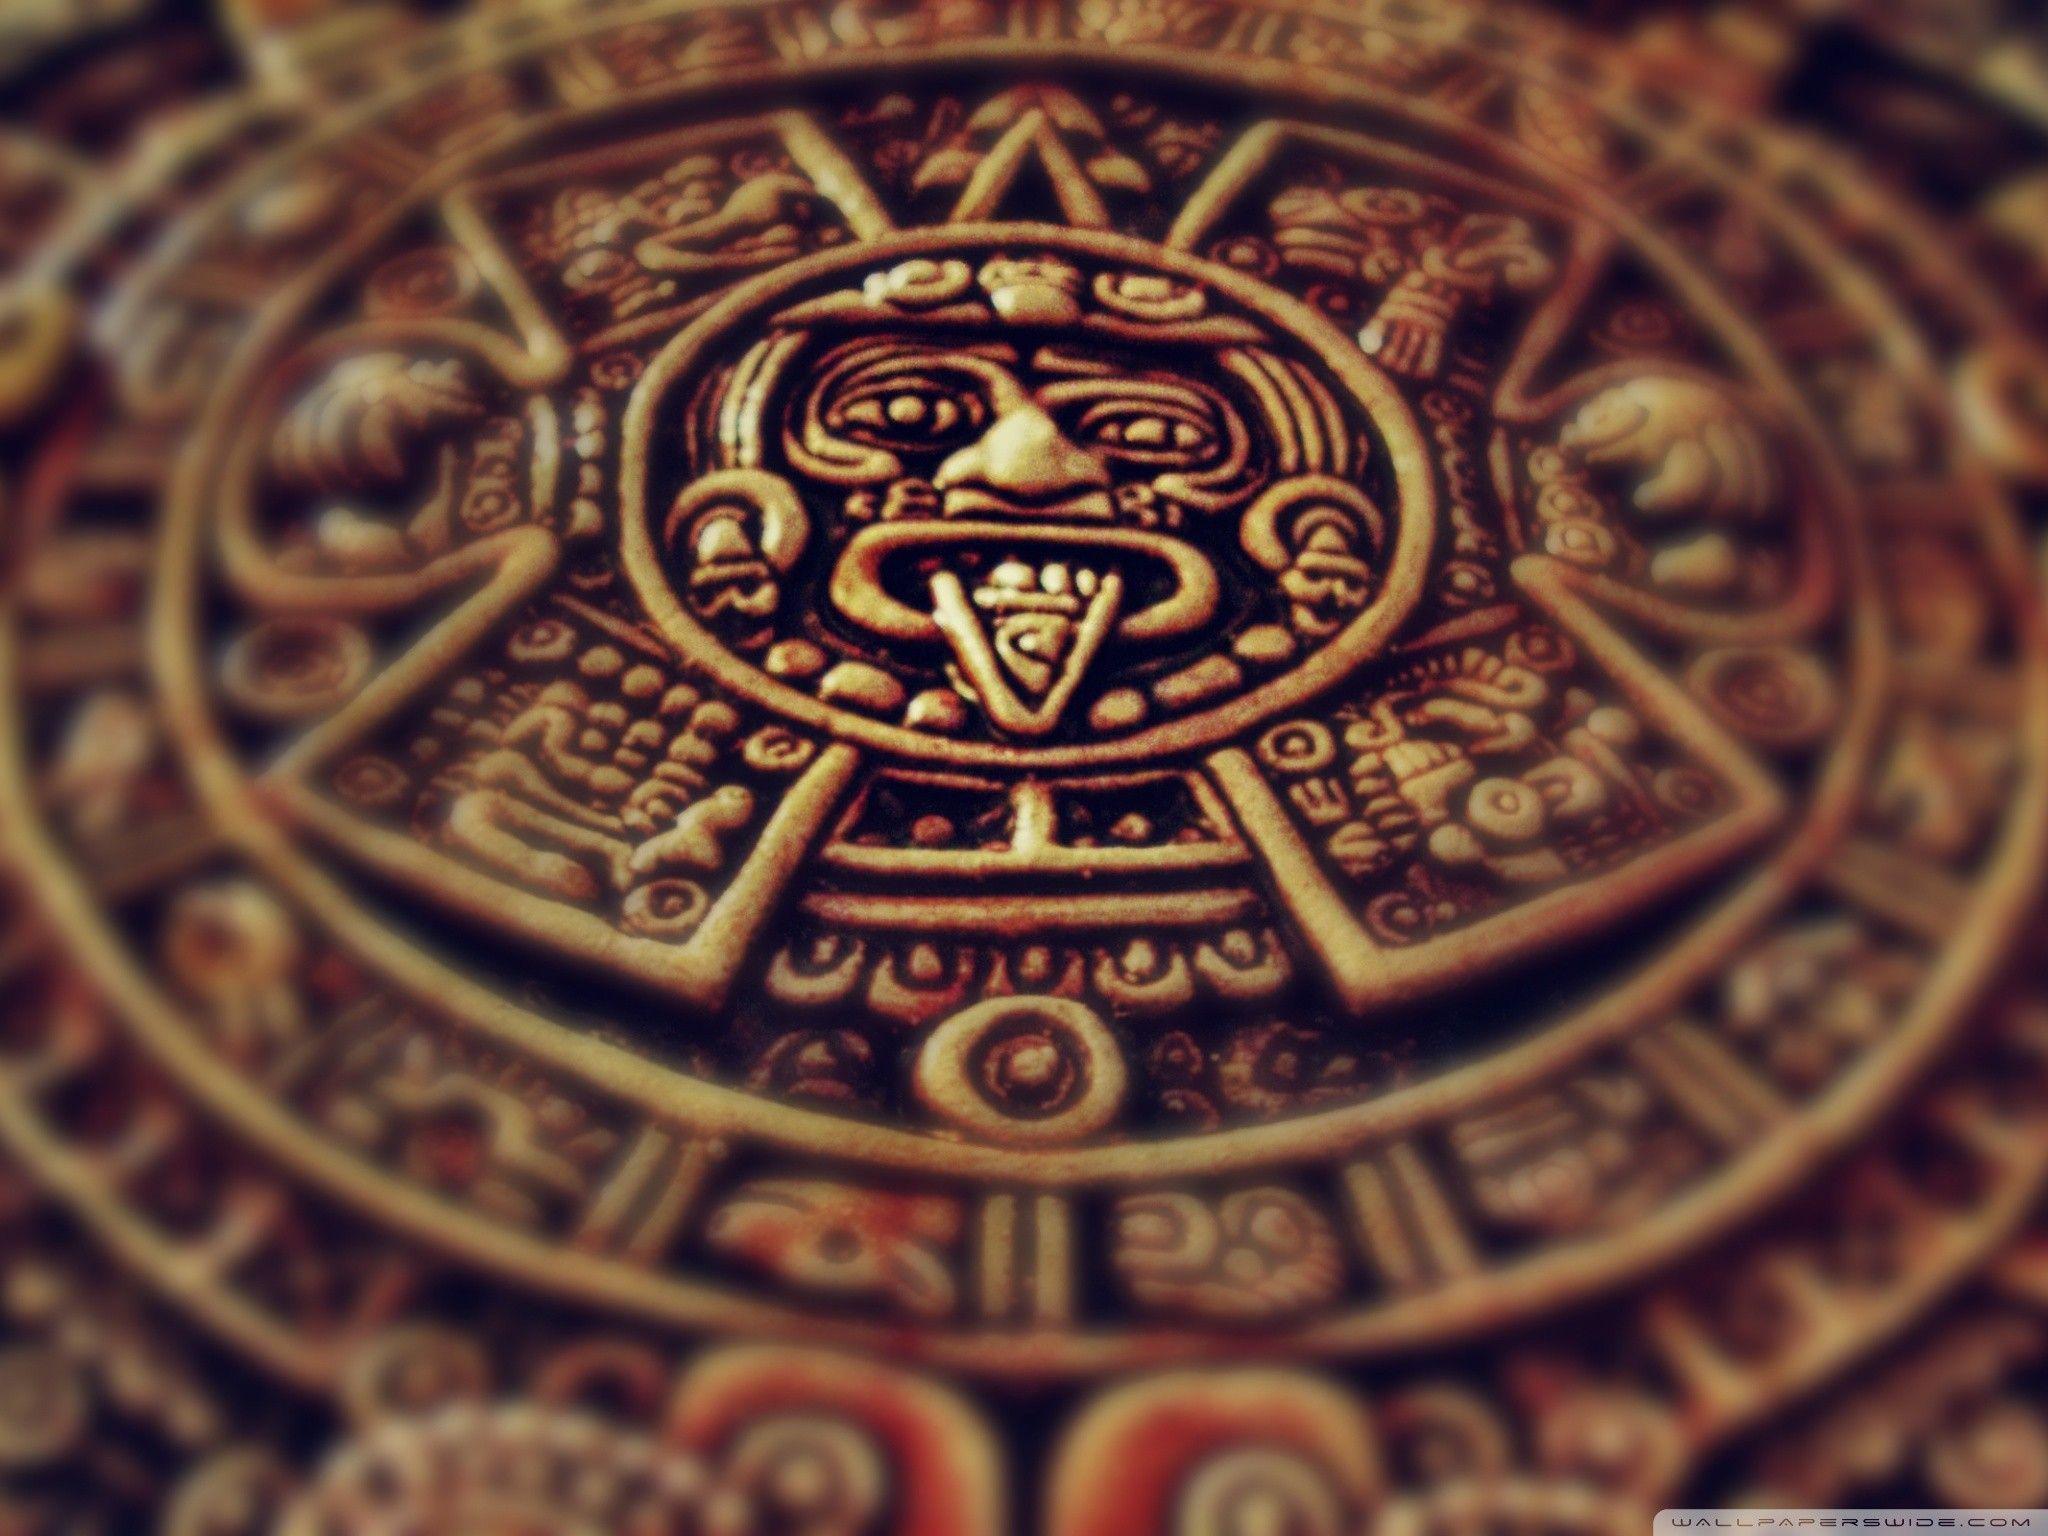 Aztec Calendar Wallpapers Wallpaper Cave HD Wallpapers Download Free Images Wallpaper [wallpaper981.blogspot.com]